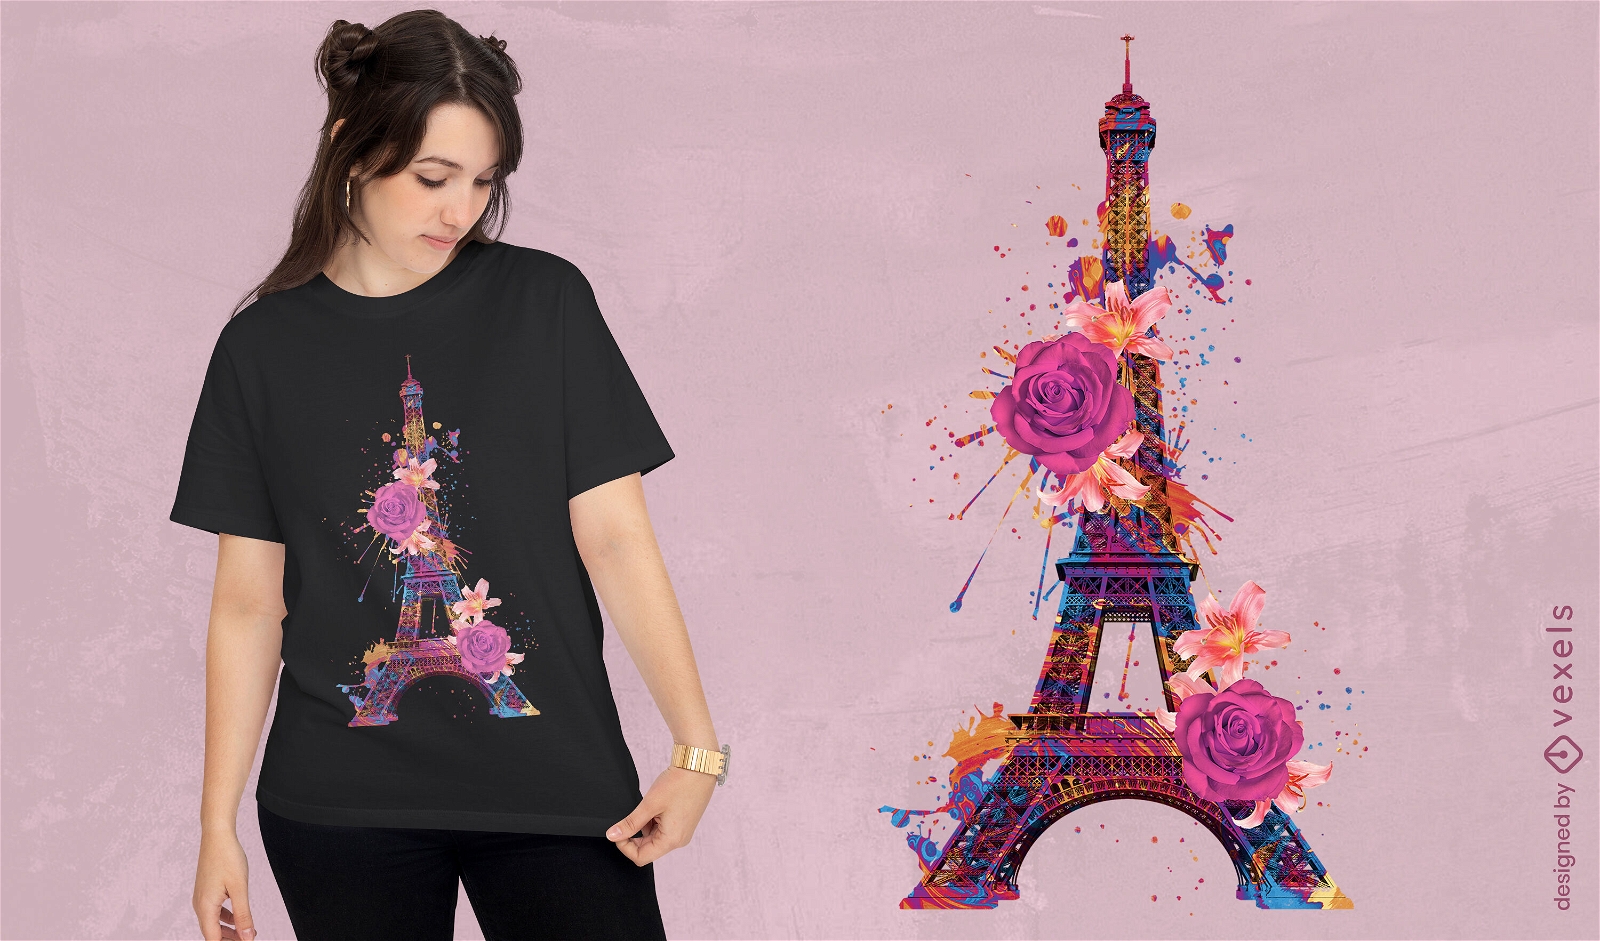 Dise?o floral de camiseta de la Torre Eiffel